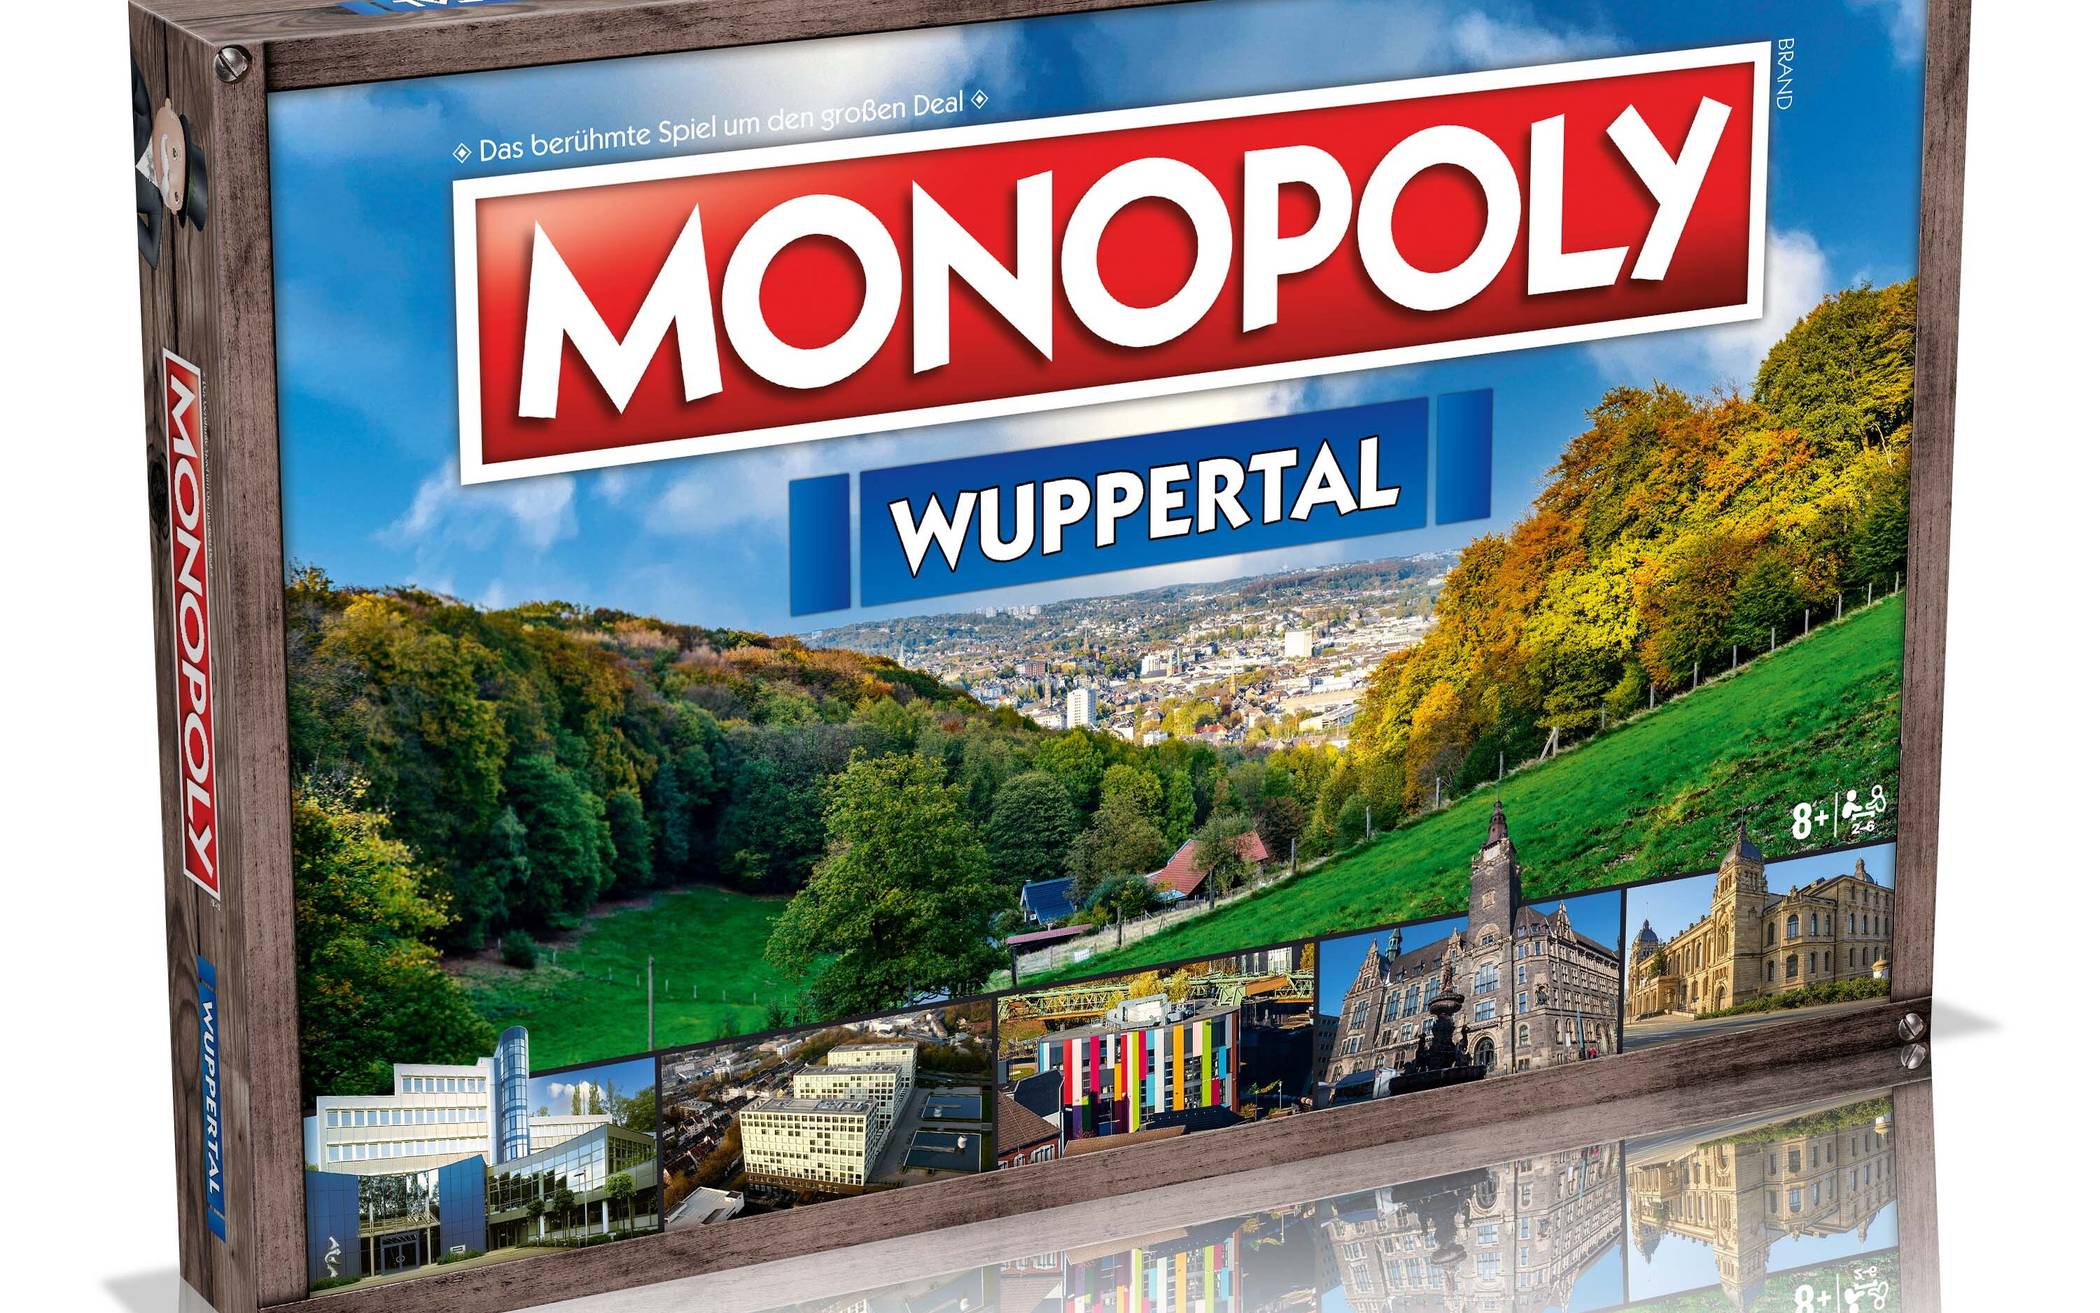  Monopoly gibt es auch in einer Wuppertal-Variante. 